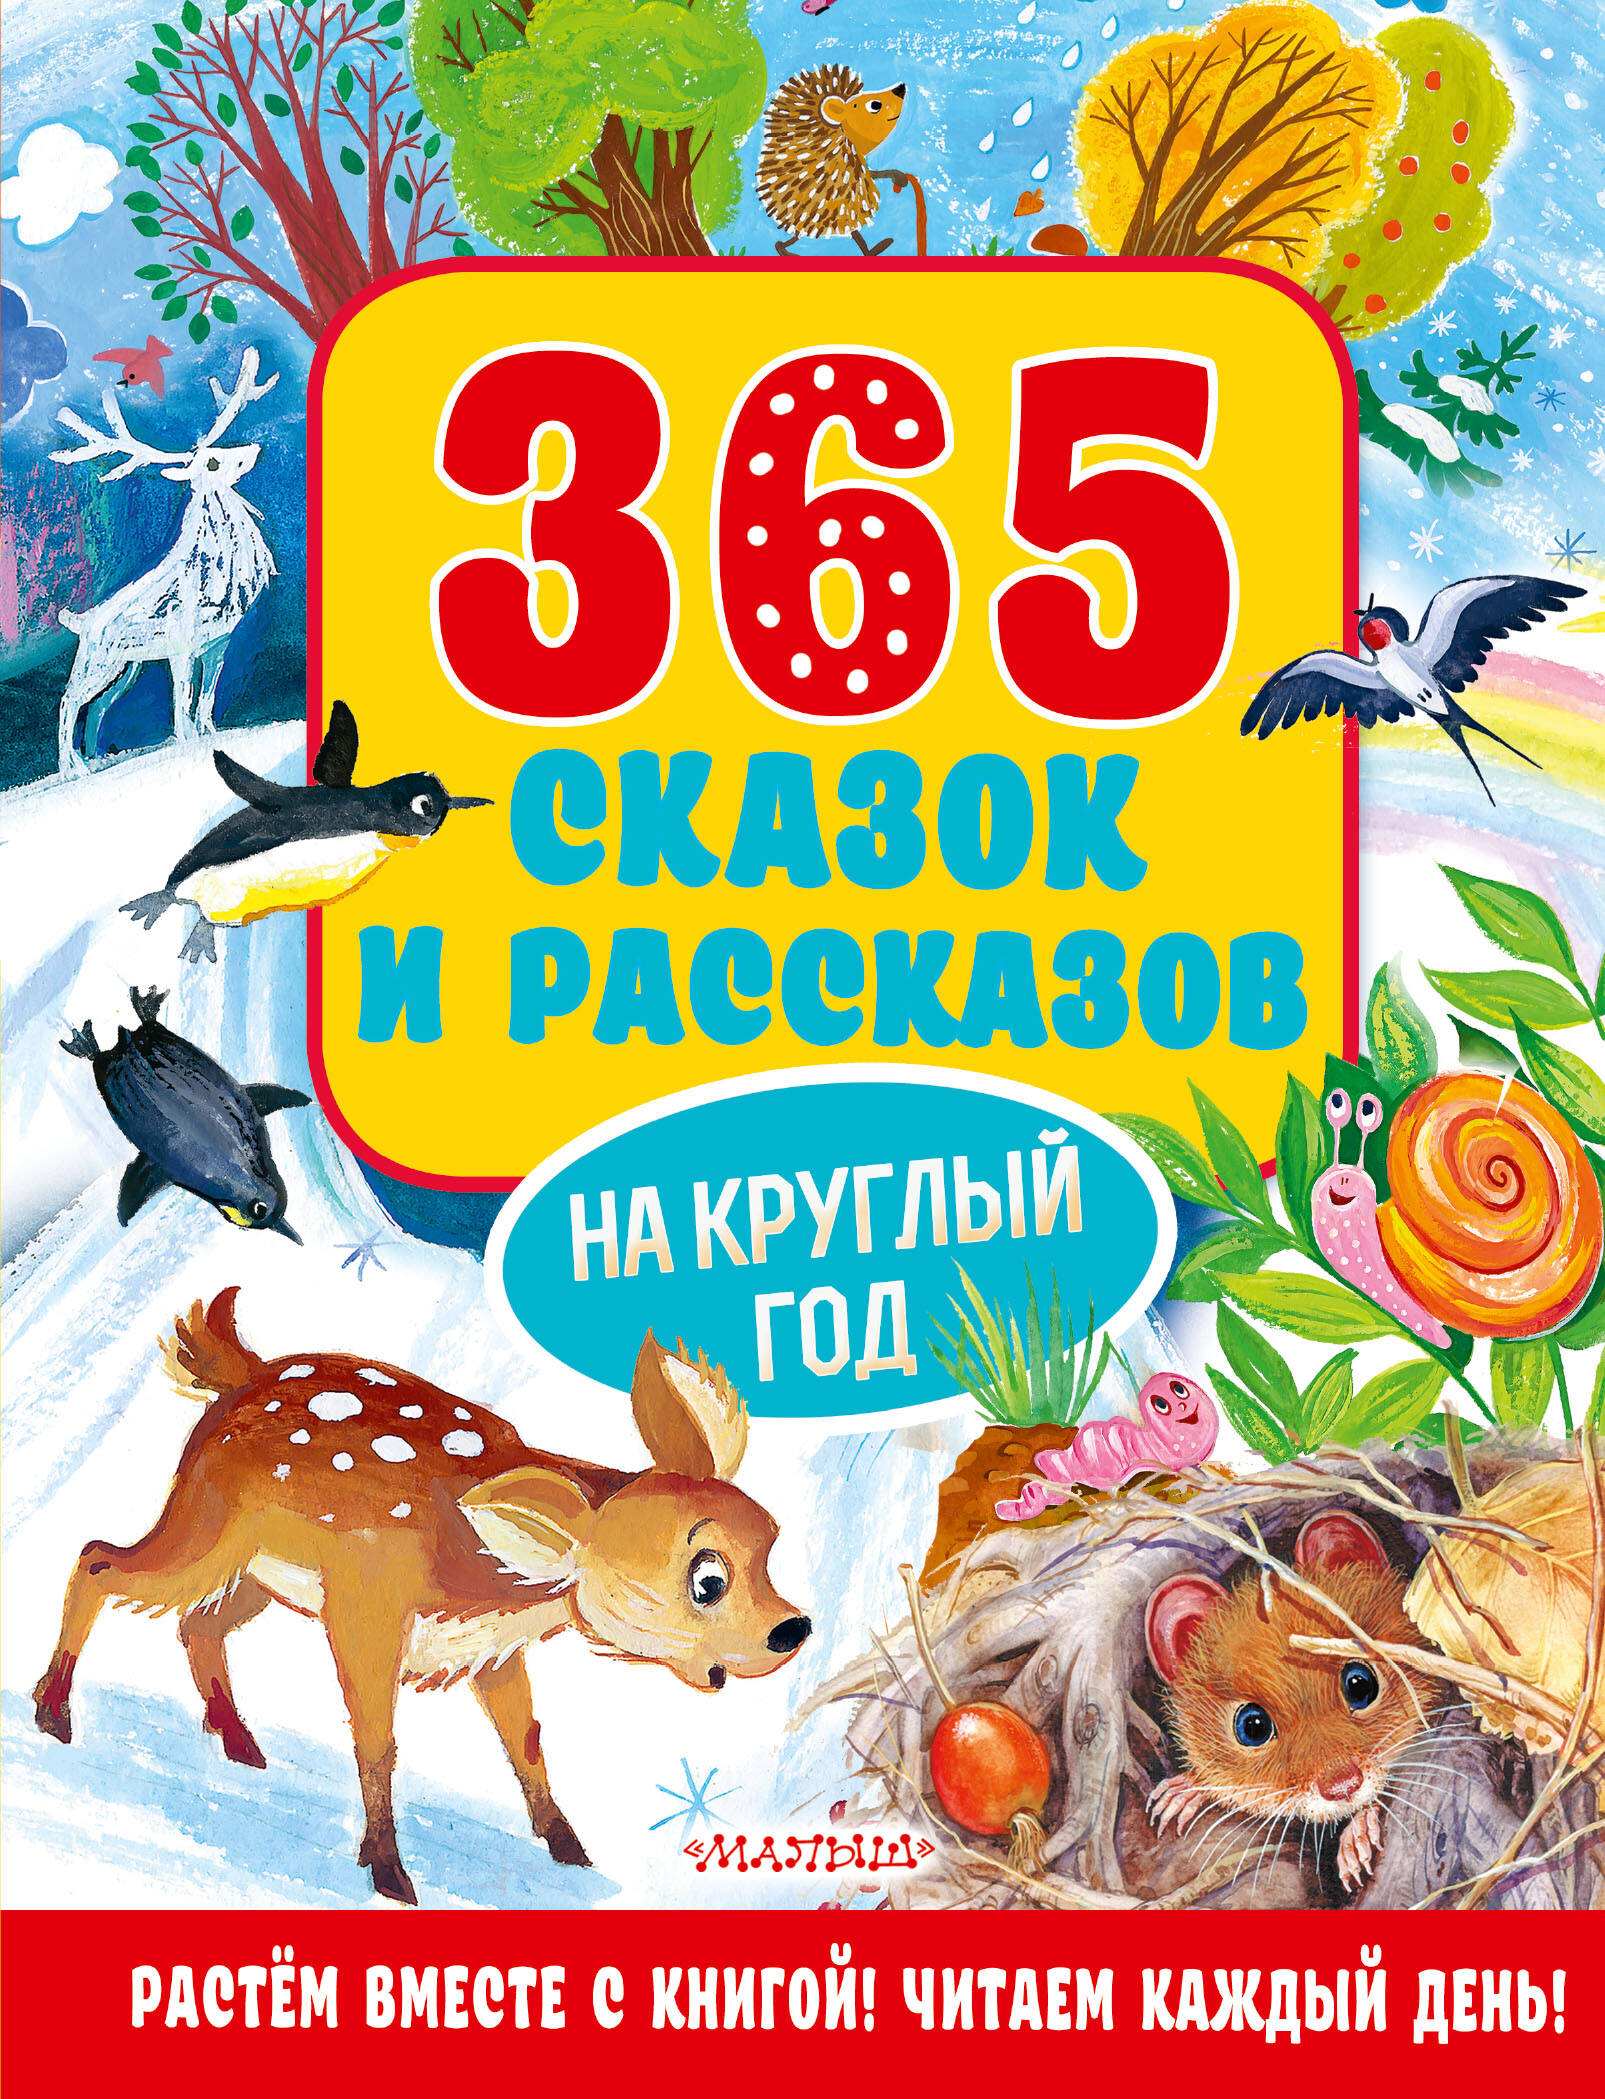 365 стихов на круглый год Осеева Валентина Александровна 365 сказок и рассказов на круглый год